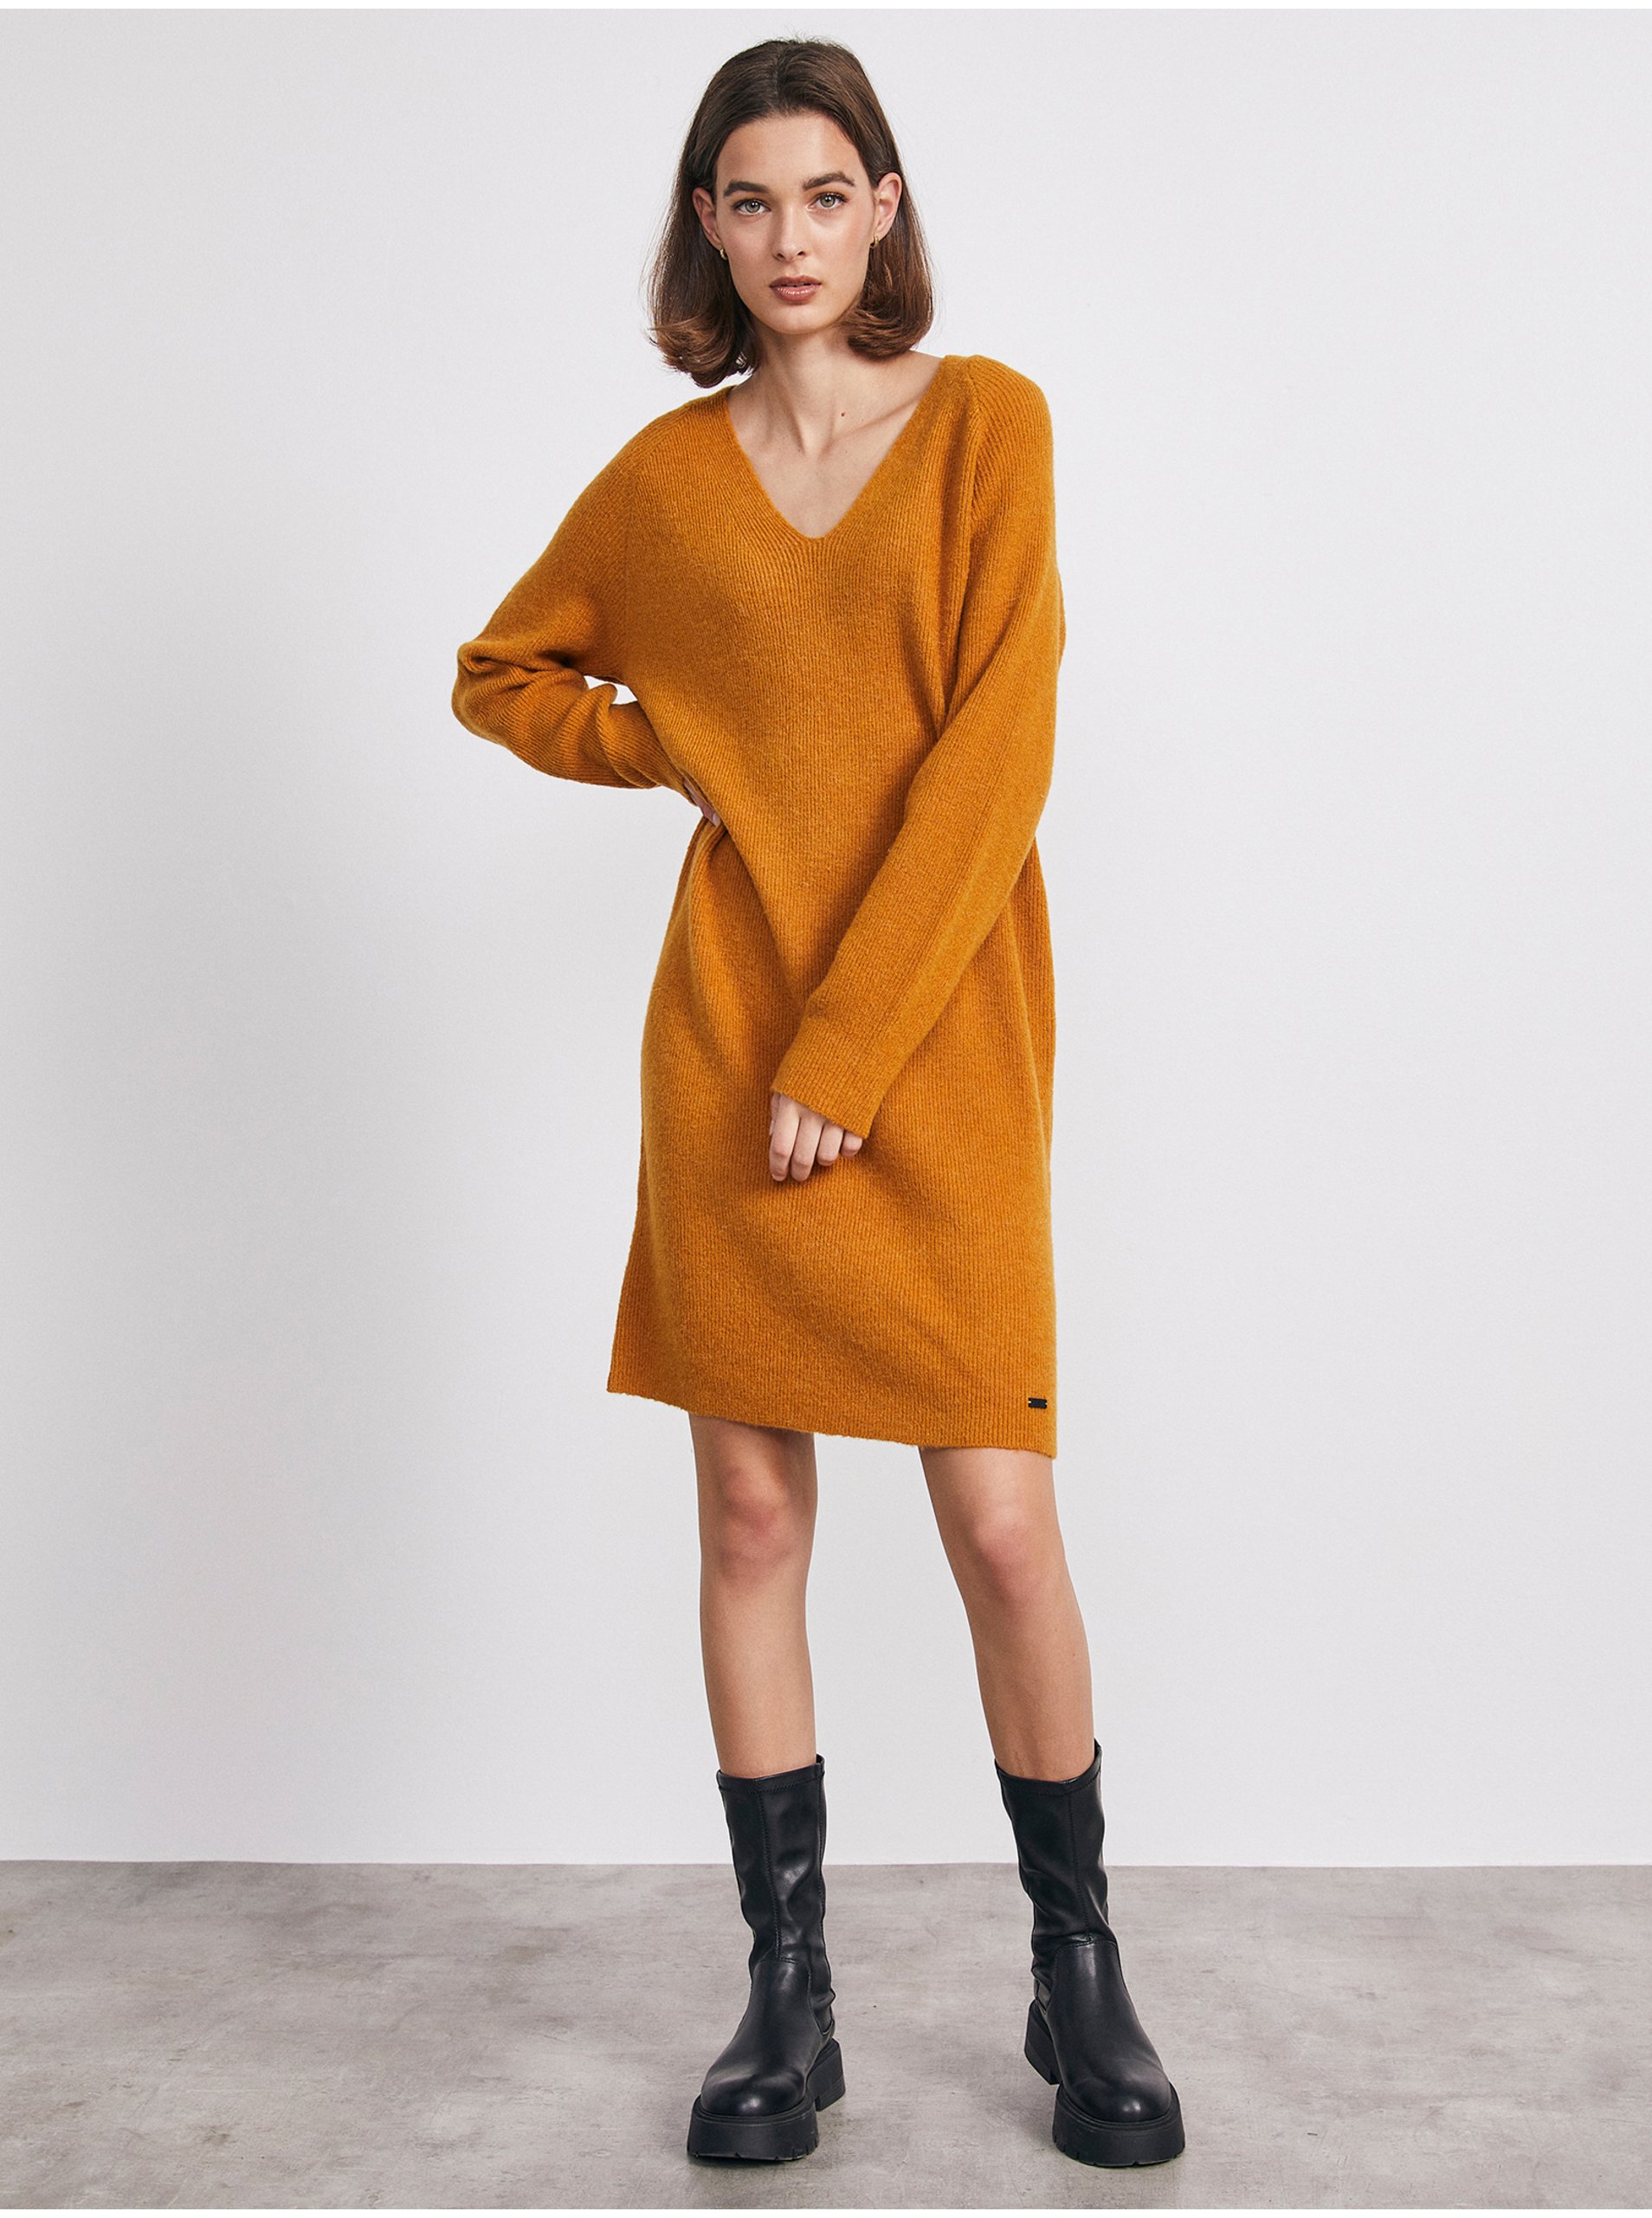 E-shop Hnědé svetrové šaty s příměsí vlny METROOPOLIS by ZOOT.lab Ofilia